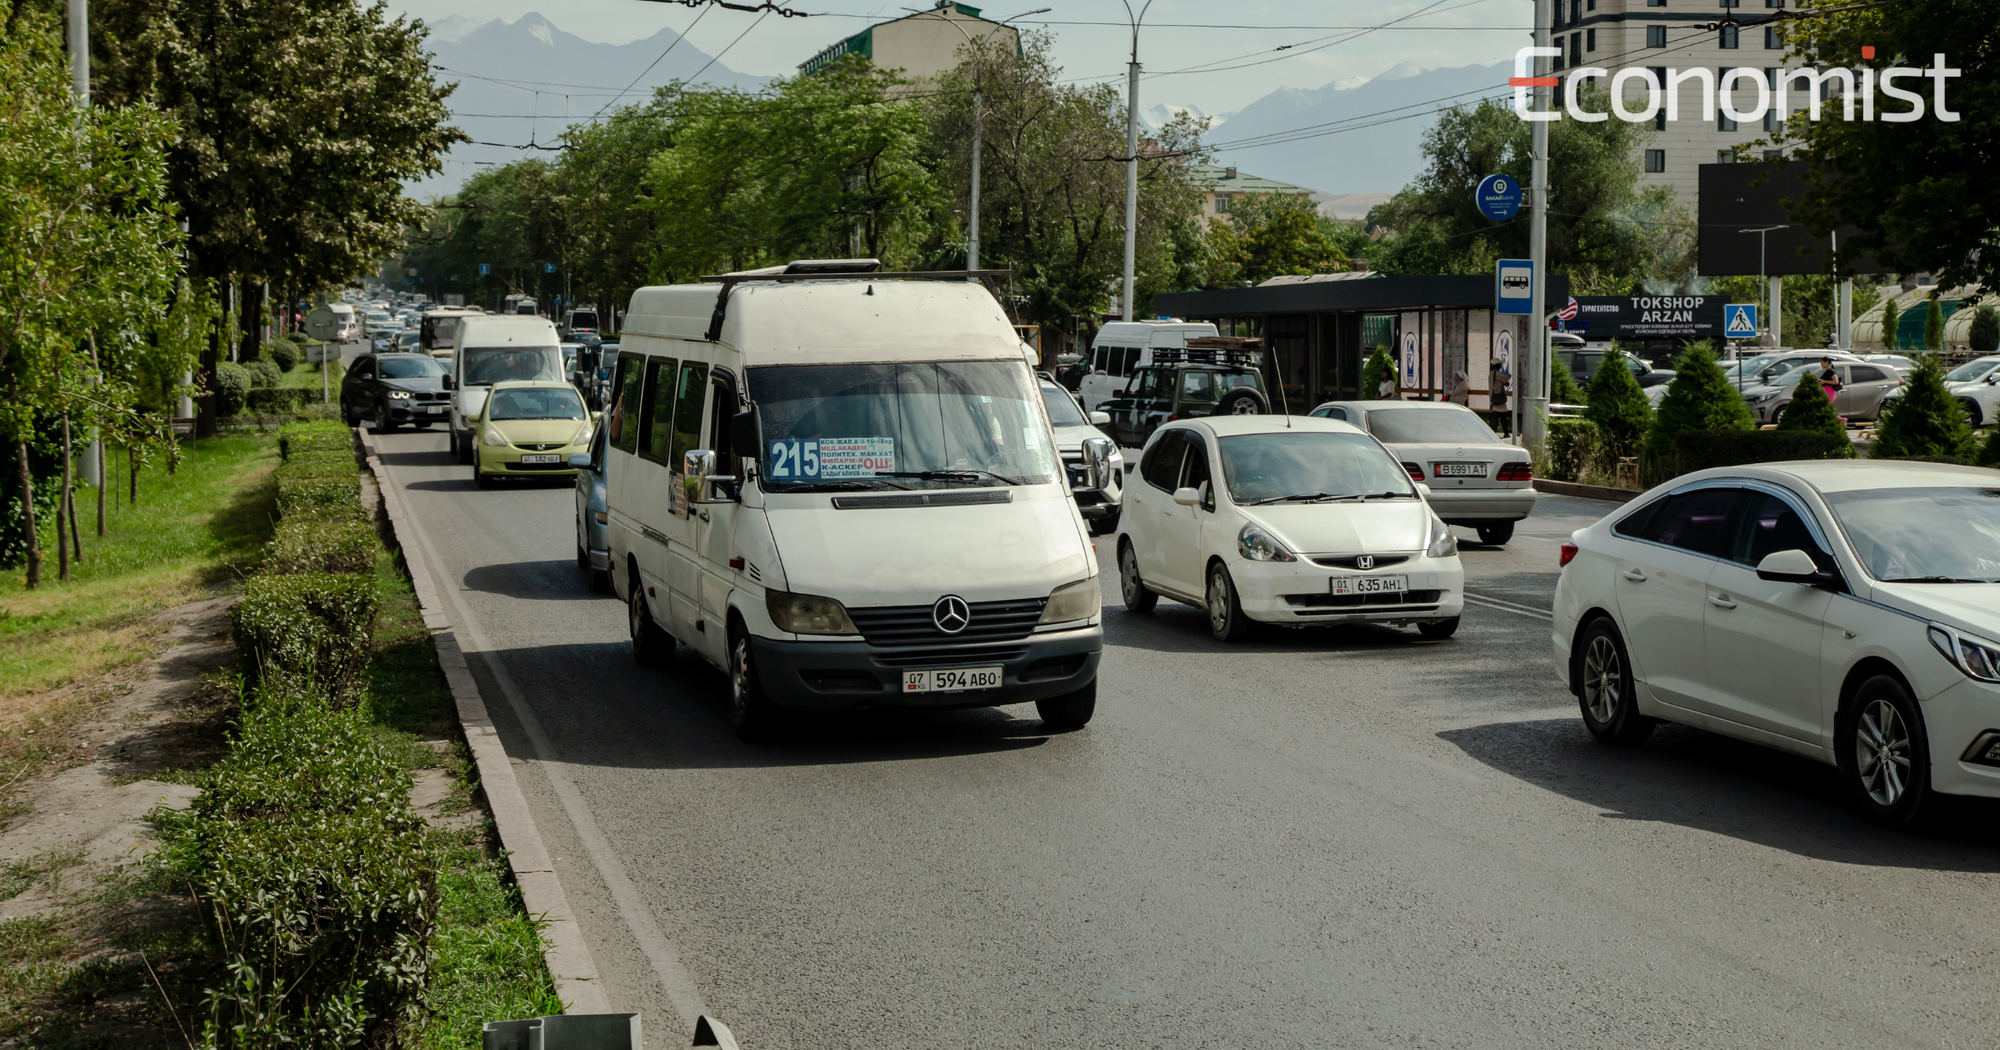 С 10 апреля из центра Бишкека начнут убирать микроавтобусы, обслуживающие 39 маршрутов — список